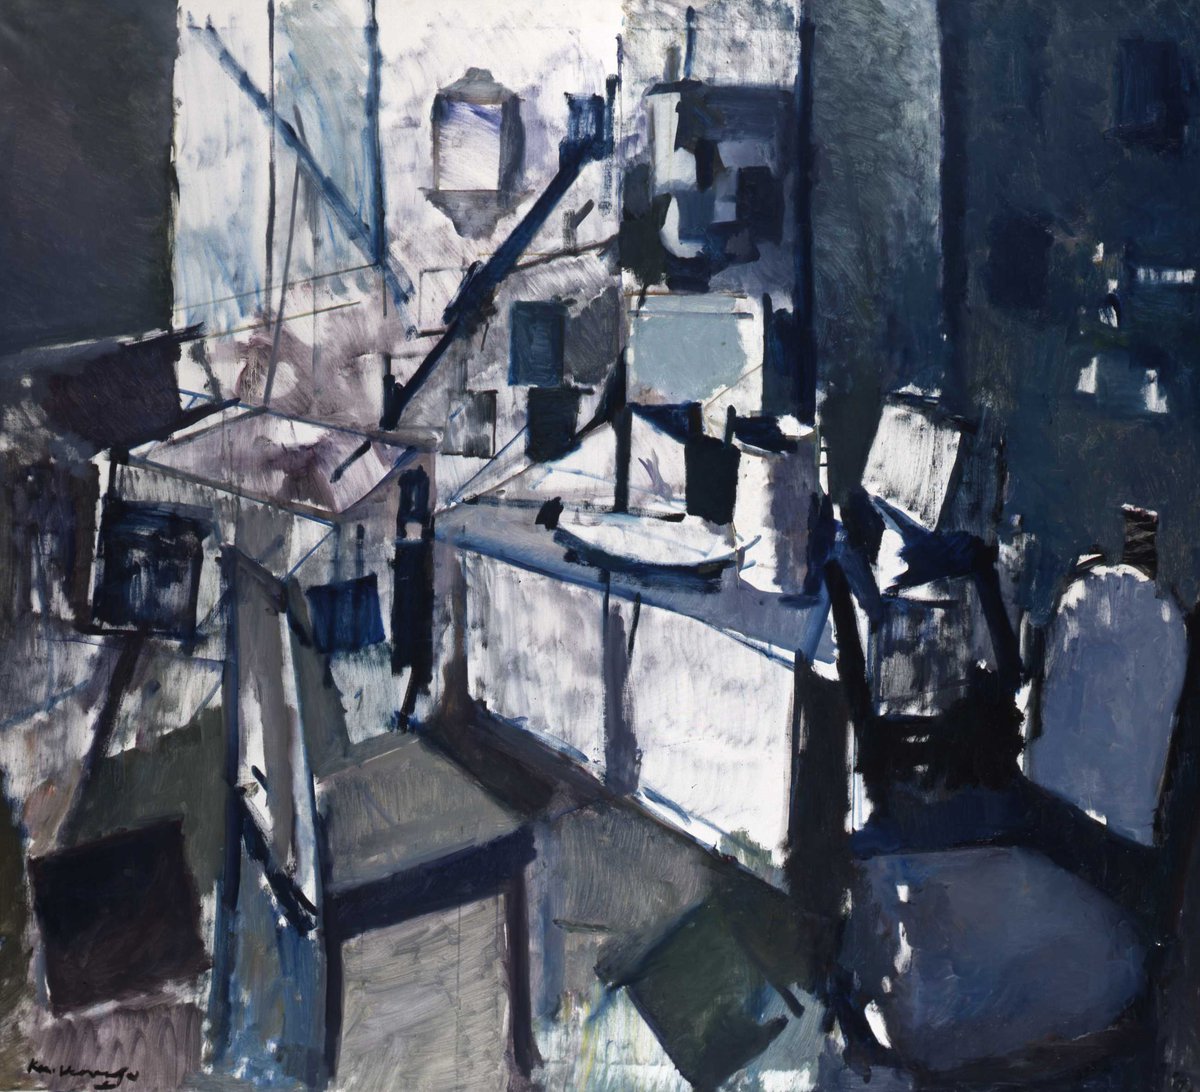 Atelierinterieur is abstract afgebeeld. In de ruimte zijn stoelen, een bureau en verschillende schilderijen aanwezig.